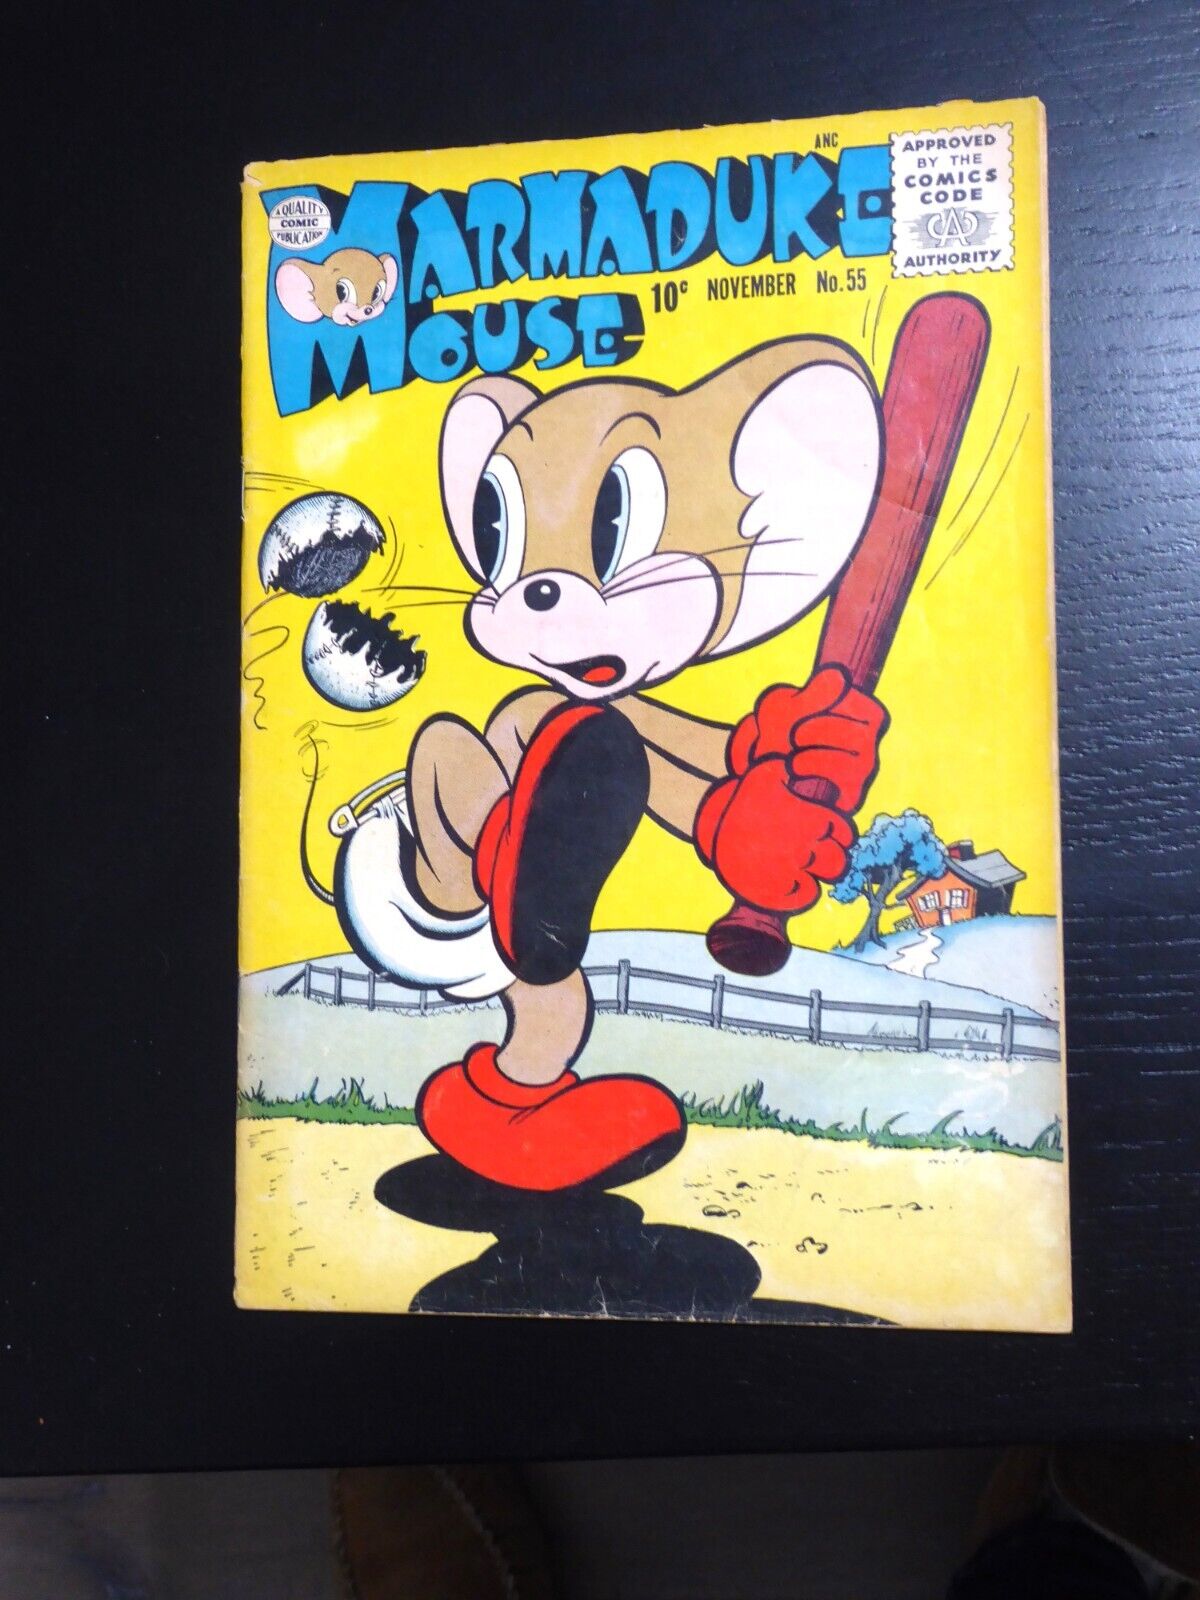 Marmaduke Mouse #55 November 1955, Baseball cover